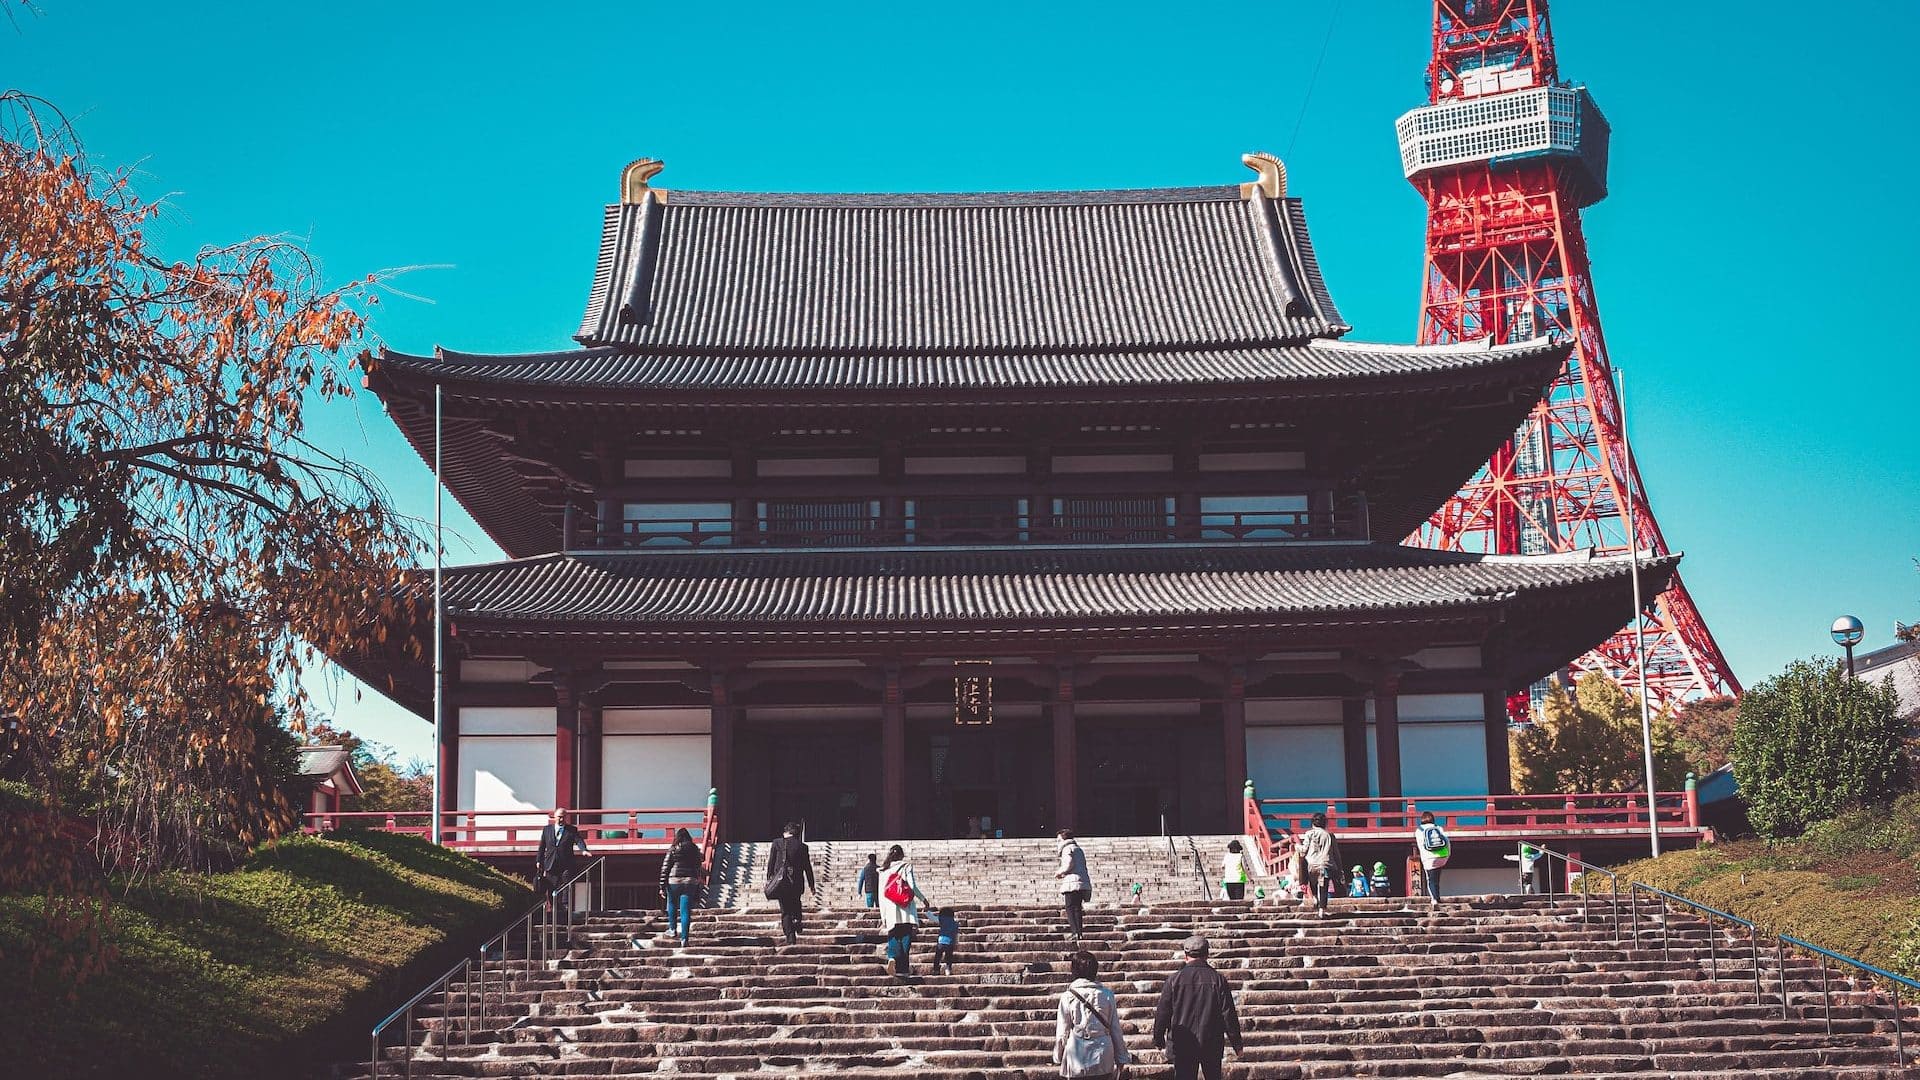 Il Tempio di Sengakuji e il Tempio di Zojoji si trovano in questa zona.